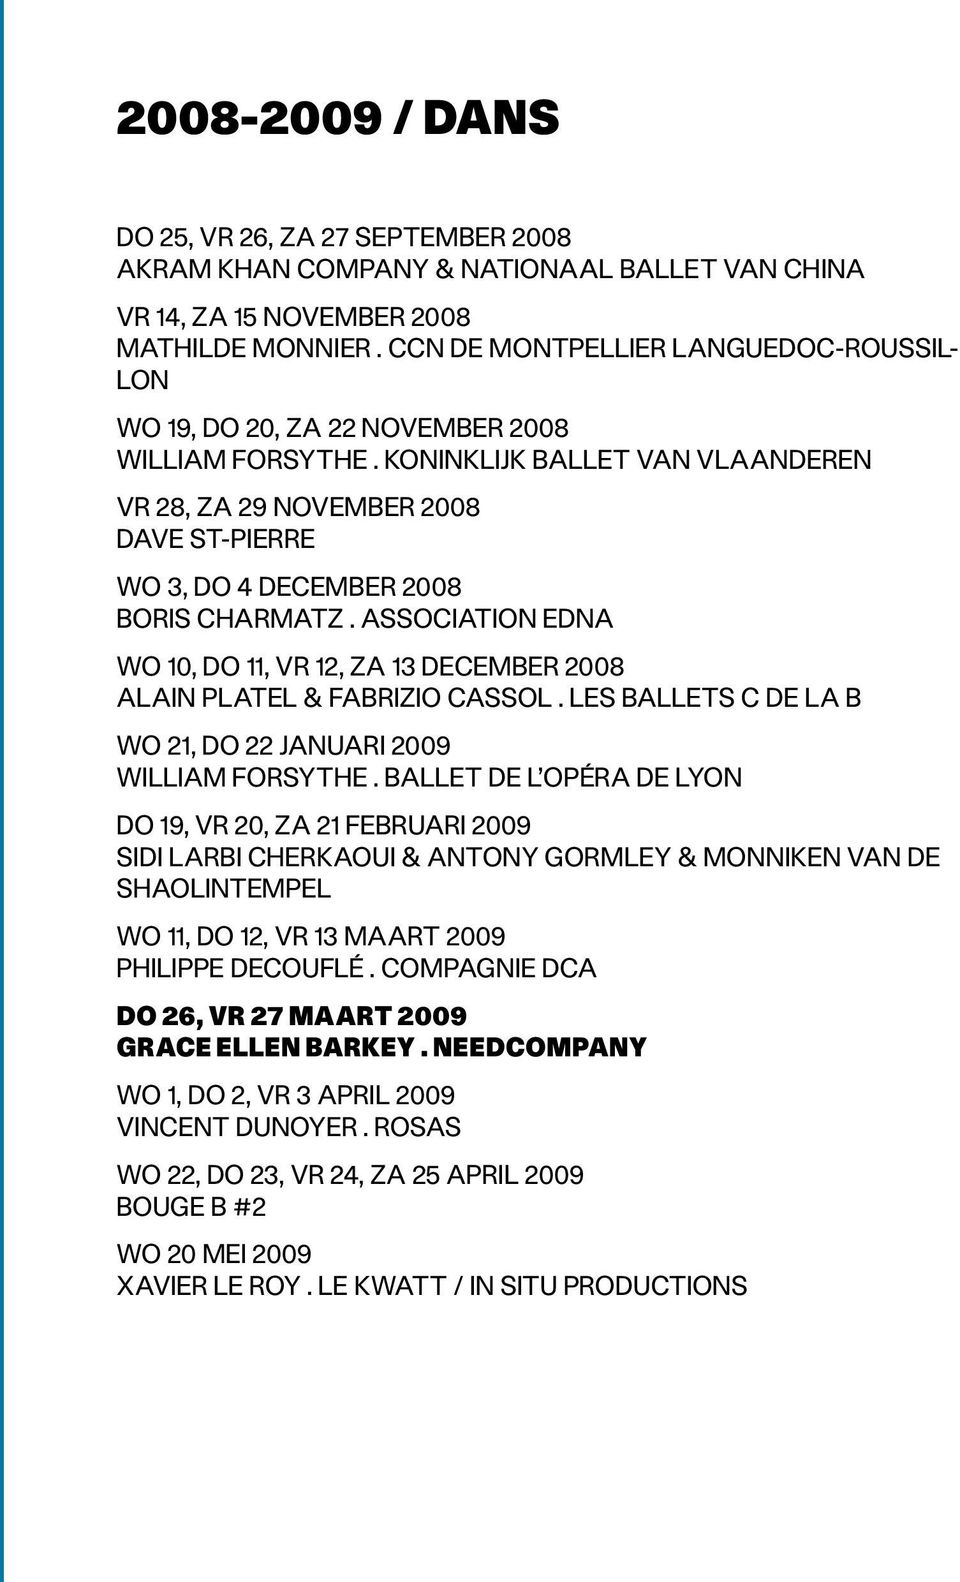 Koninklijk Ballet van Vlaanderen VR 28, ZA 29 NOVEMBER 2008 Dave St-Pierre WO 3, DO 4 DECEMBER 2008 Boris Charmatz.